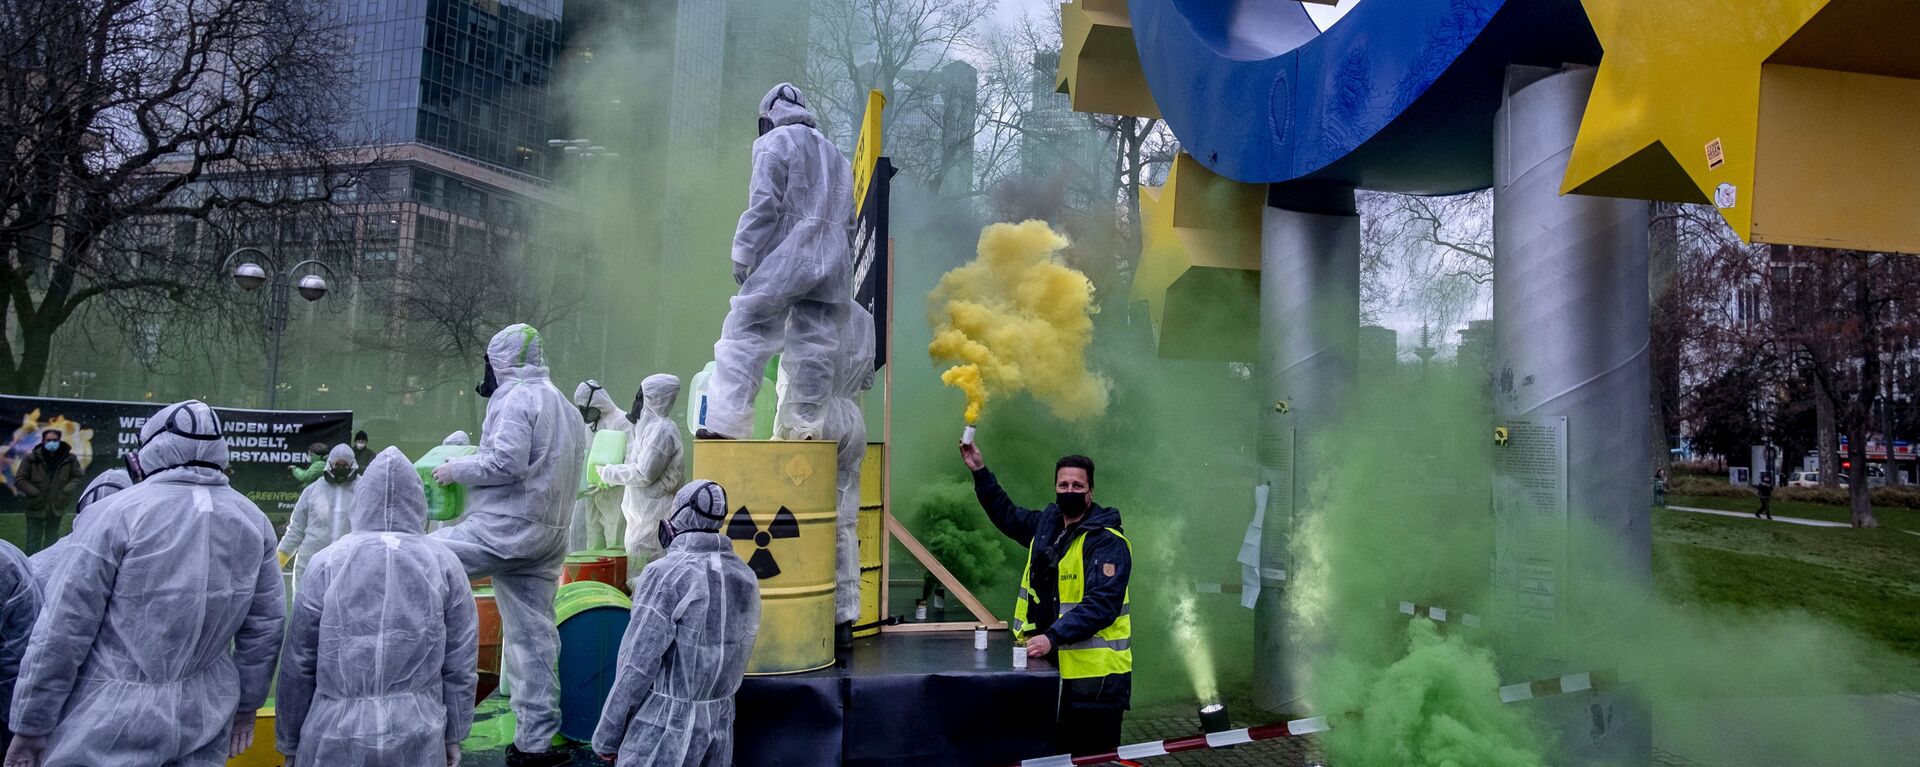 احتجاج نشطاء البيئة في غرينبيس و كوالا كولكتيف ضد غسل الاتحاد الأوروبي للطاقة النووية تحت تمثال اليورو في فرانكفورت، ألمانيا، 11 يناير 2022. - سبوتنيك عربي, 1920, 05.07.2022